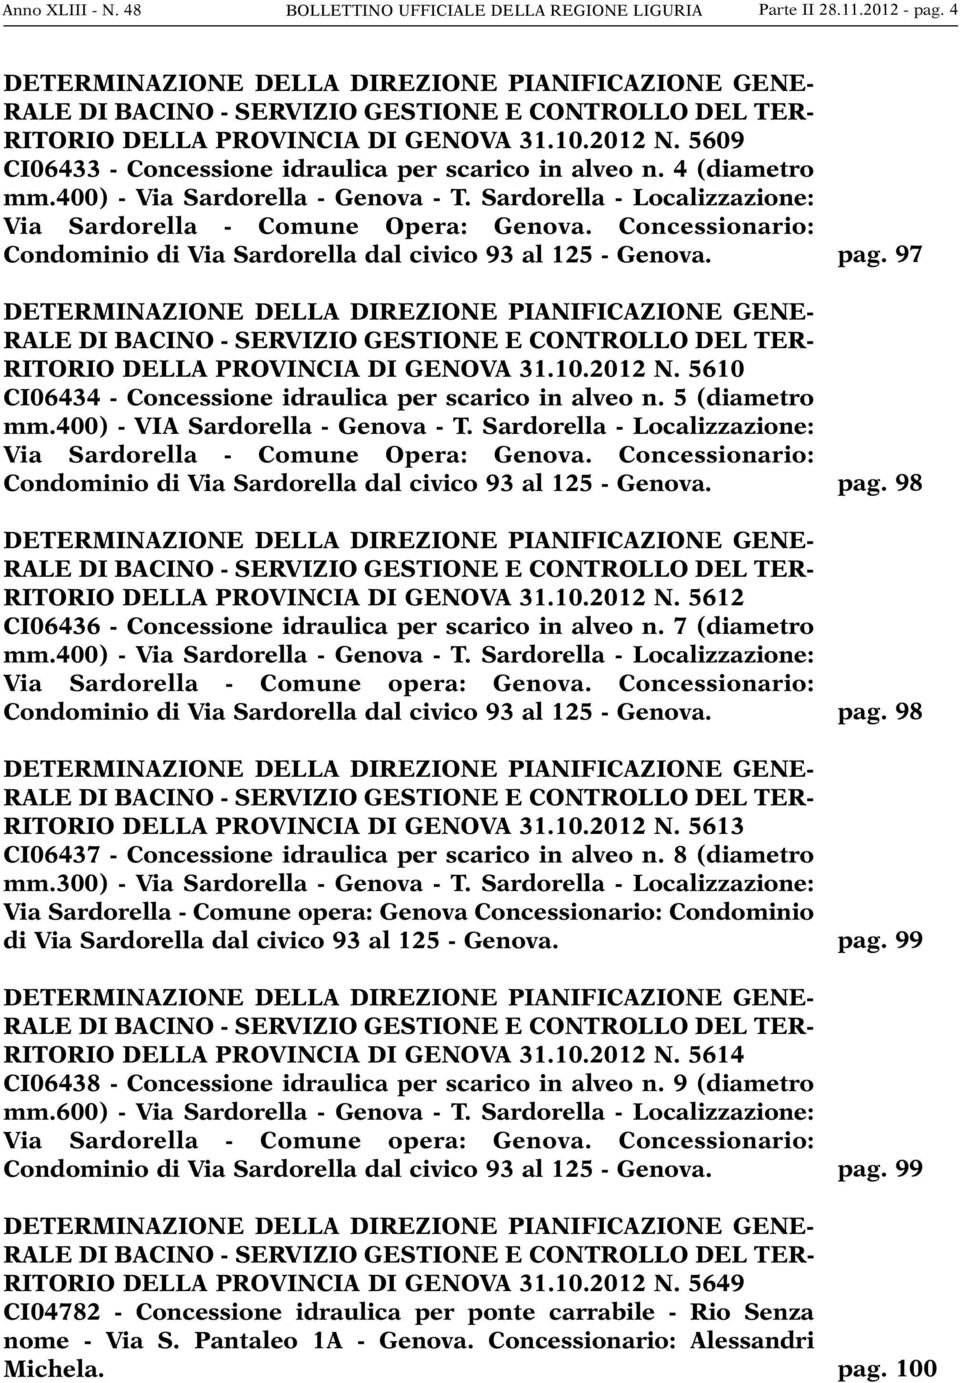 5609 CI06433 - Concessione idraulica per scarico in alveo n. 4 (diametro mm.400) - Via Sardorella - Genova - T. Sardorella - Localizzazione: Via Sardorella - Comune Opera: Genova.